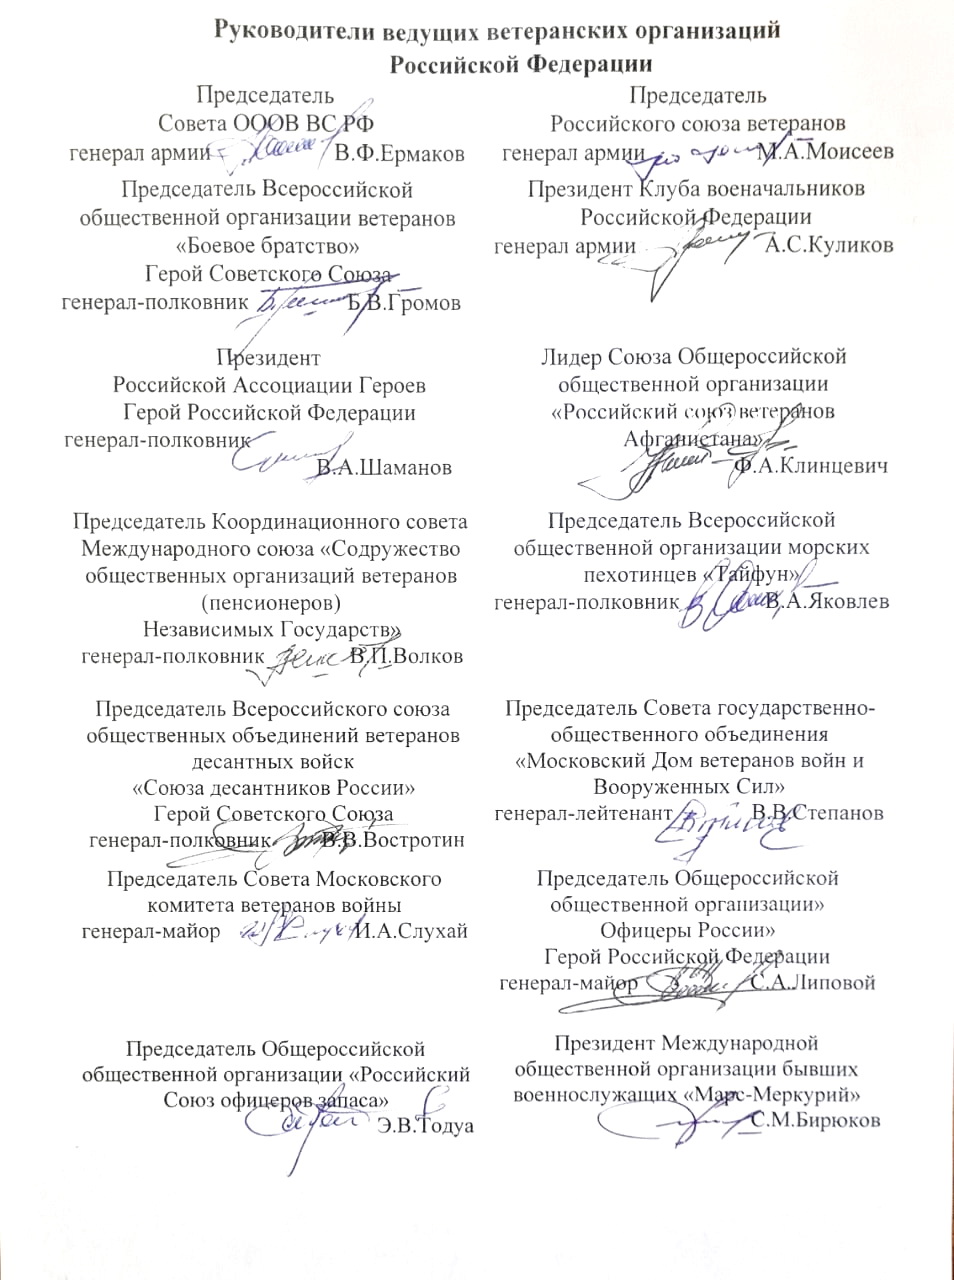 Совместное заявление ведущих ветеранских организаций в связи с проведением Вооруженными Силами Российской Федерации специальной военной операции по защите Луганской и Донецкой народных республик